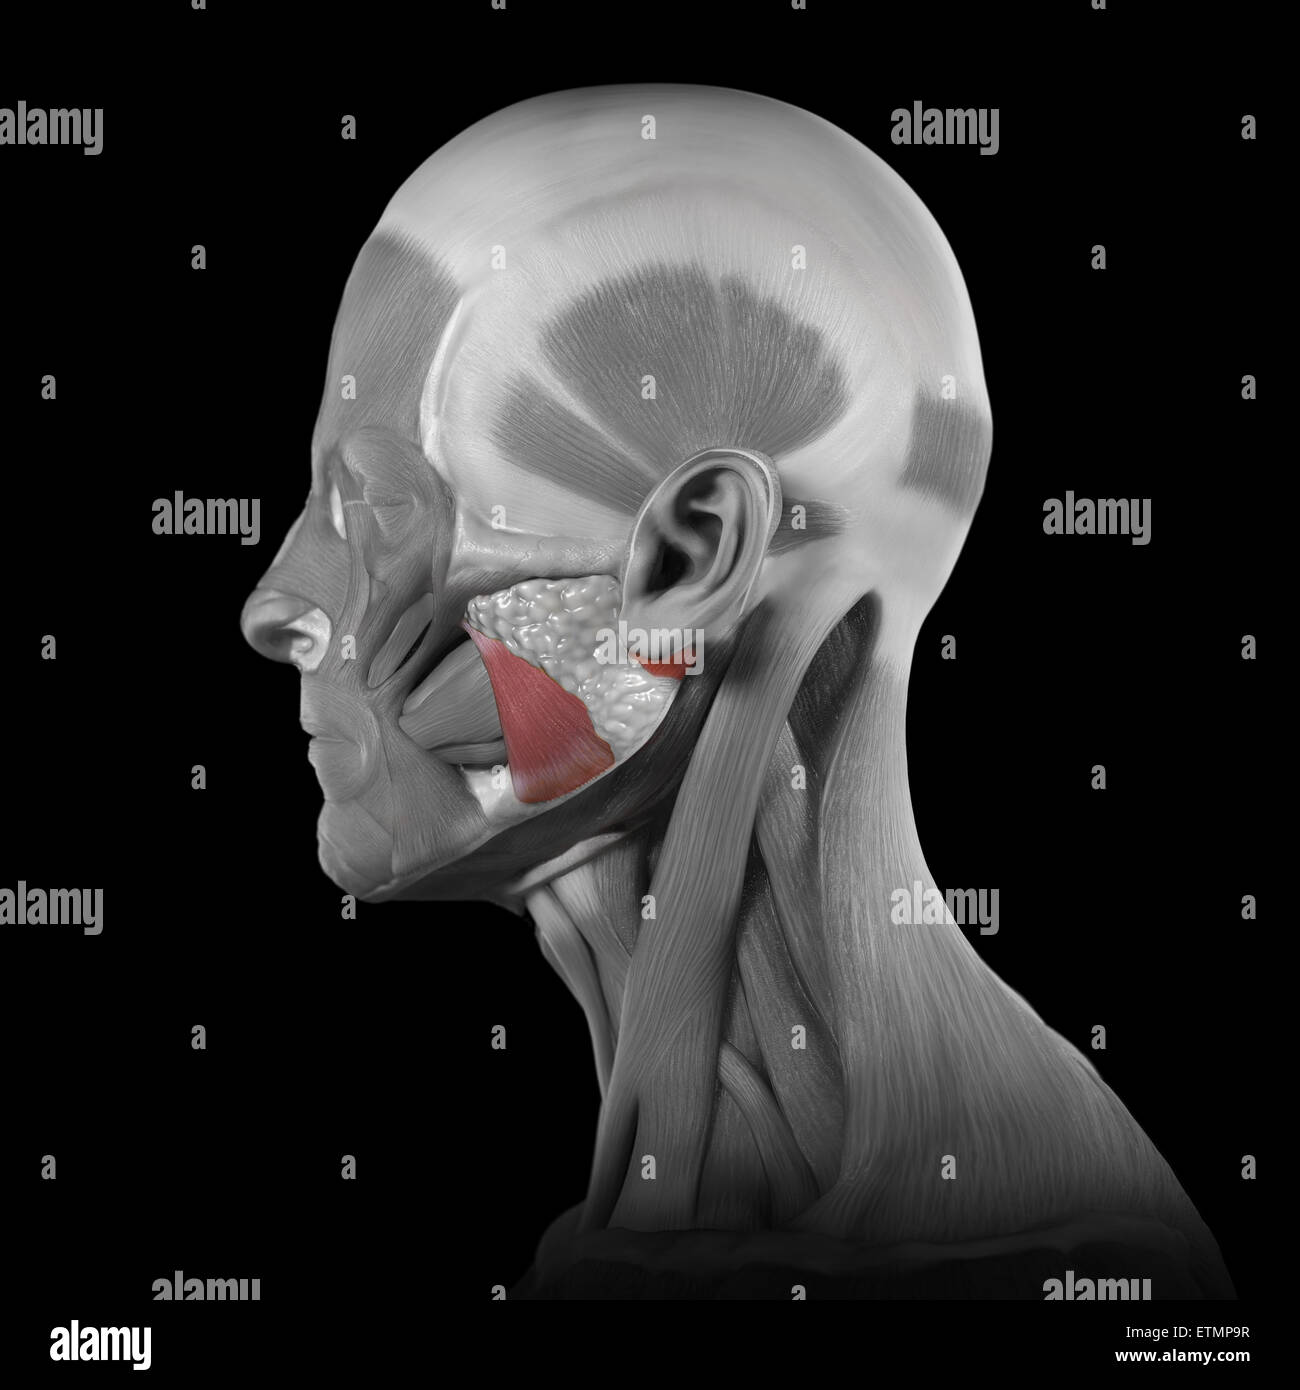 Immagine concettuale dei muscoli del viso con i muscoli masseteri evidenziata. Foto Stock